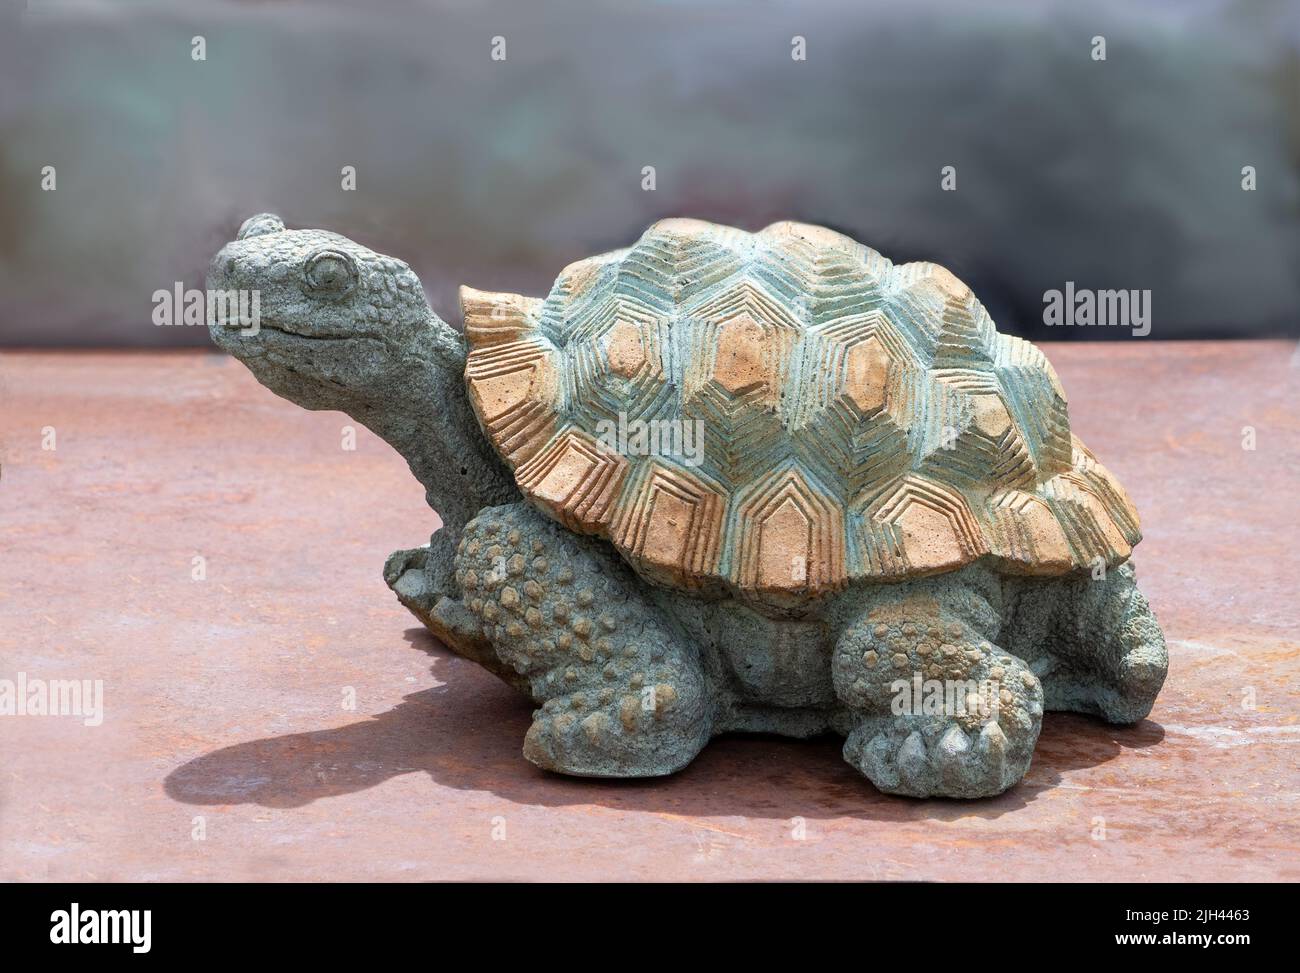 Steinschildkröten-Skulptur sieht aus, als sei er unterwegs, bewacht aber stattdessen den Garten in glücklicher Stille Stockfoto